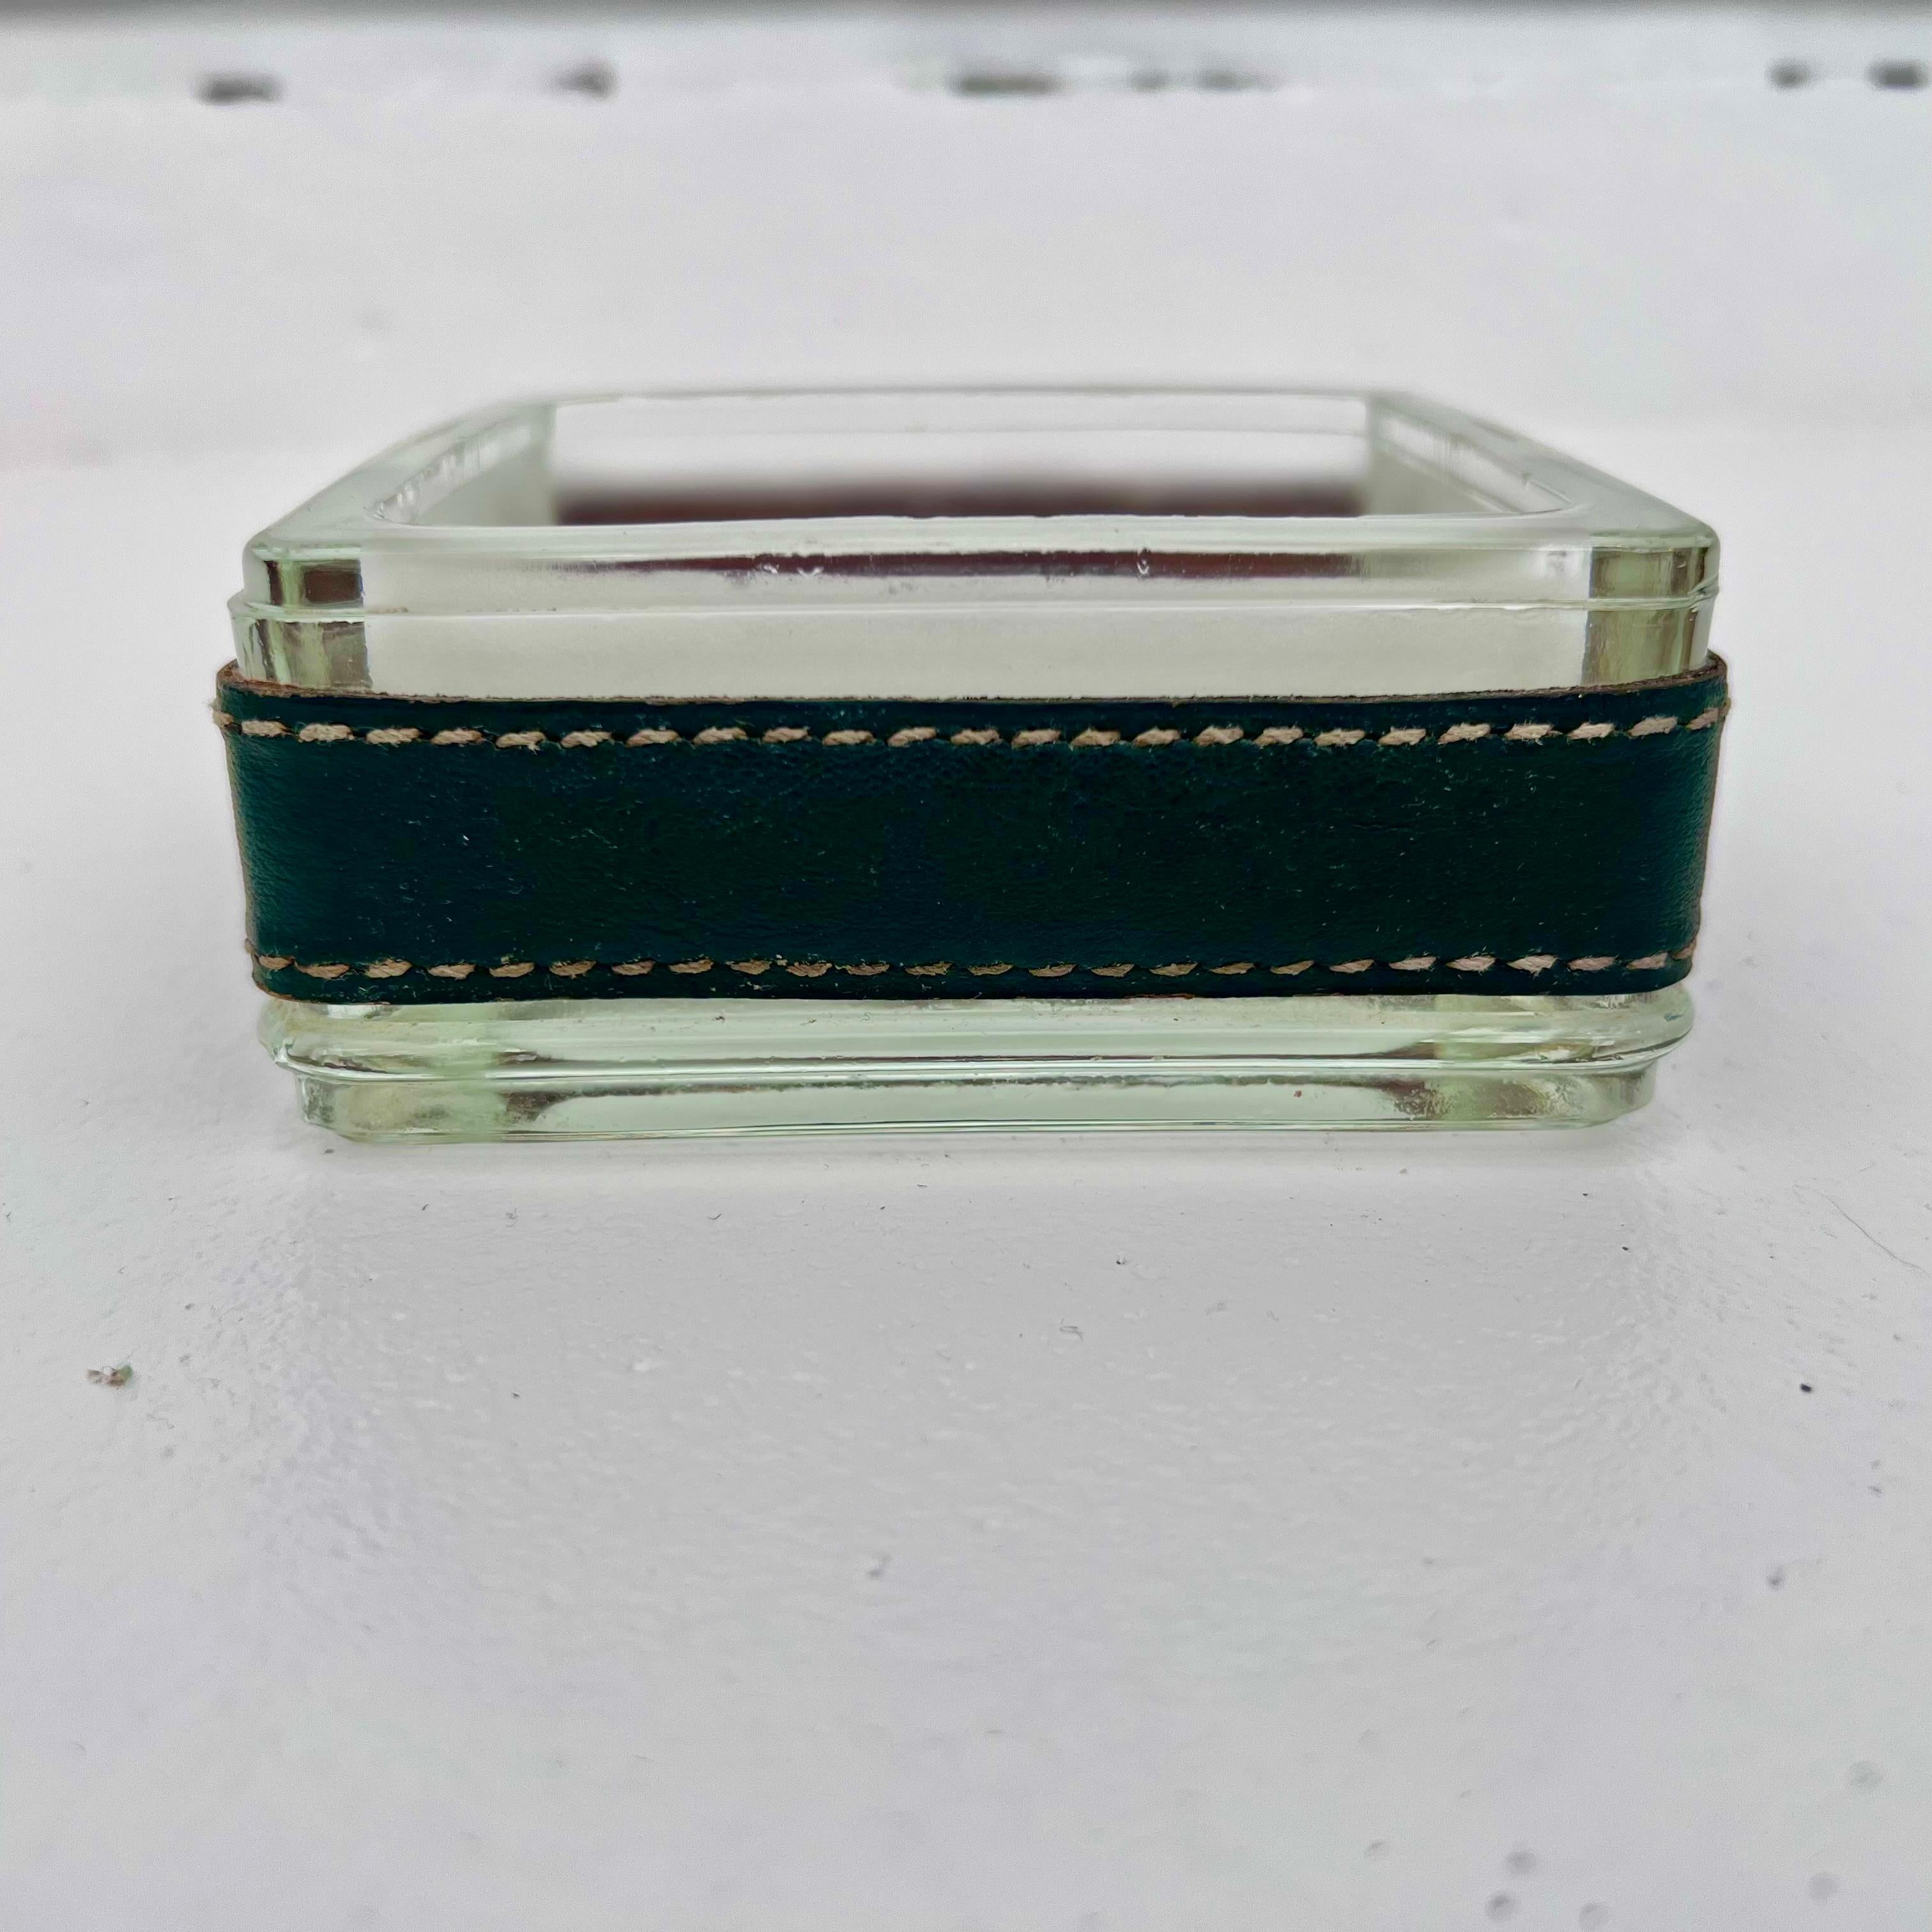 Magnifique cendrier en cuir vert et verre dépoli des années 1950, réalisé par le célèbre designer moderniste français de l'Art déco, Jacques Adnet. La partie intérieure du récepteur en verre est givrée et entourée d'un bracelet en cuir texturé vert